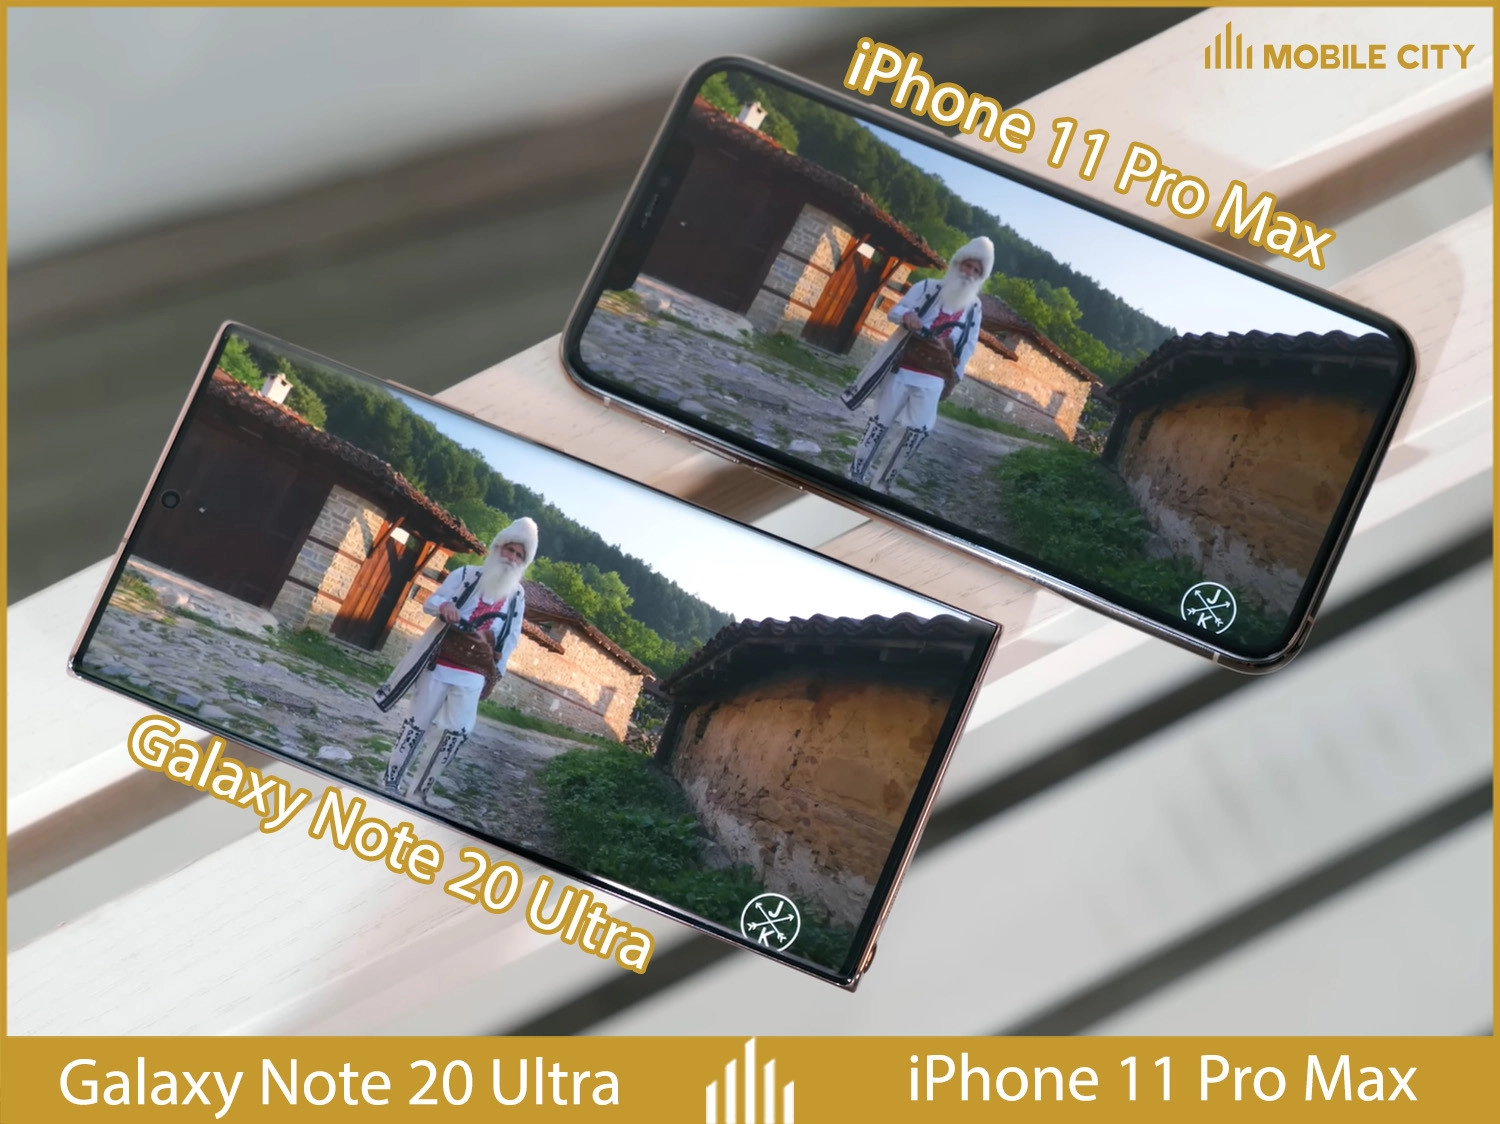 iphone-11-pro-max-cu-so-voi-galaxy-note20-ultra-cu-03